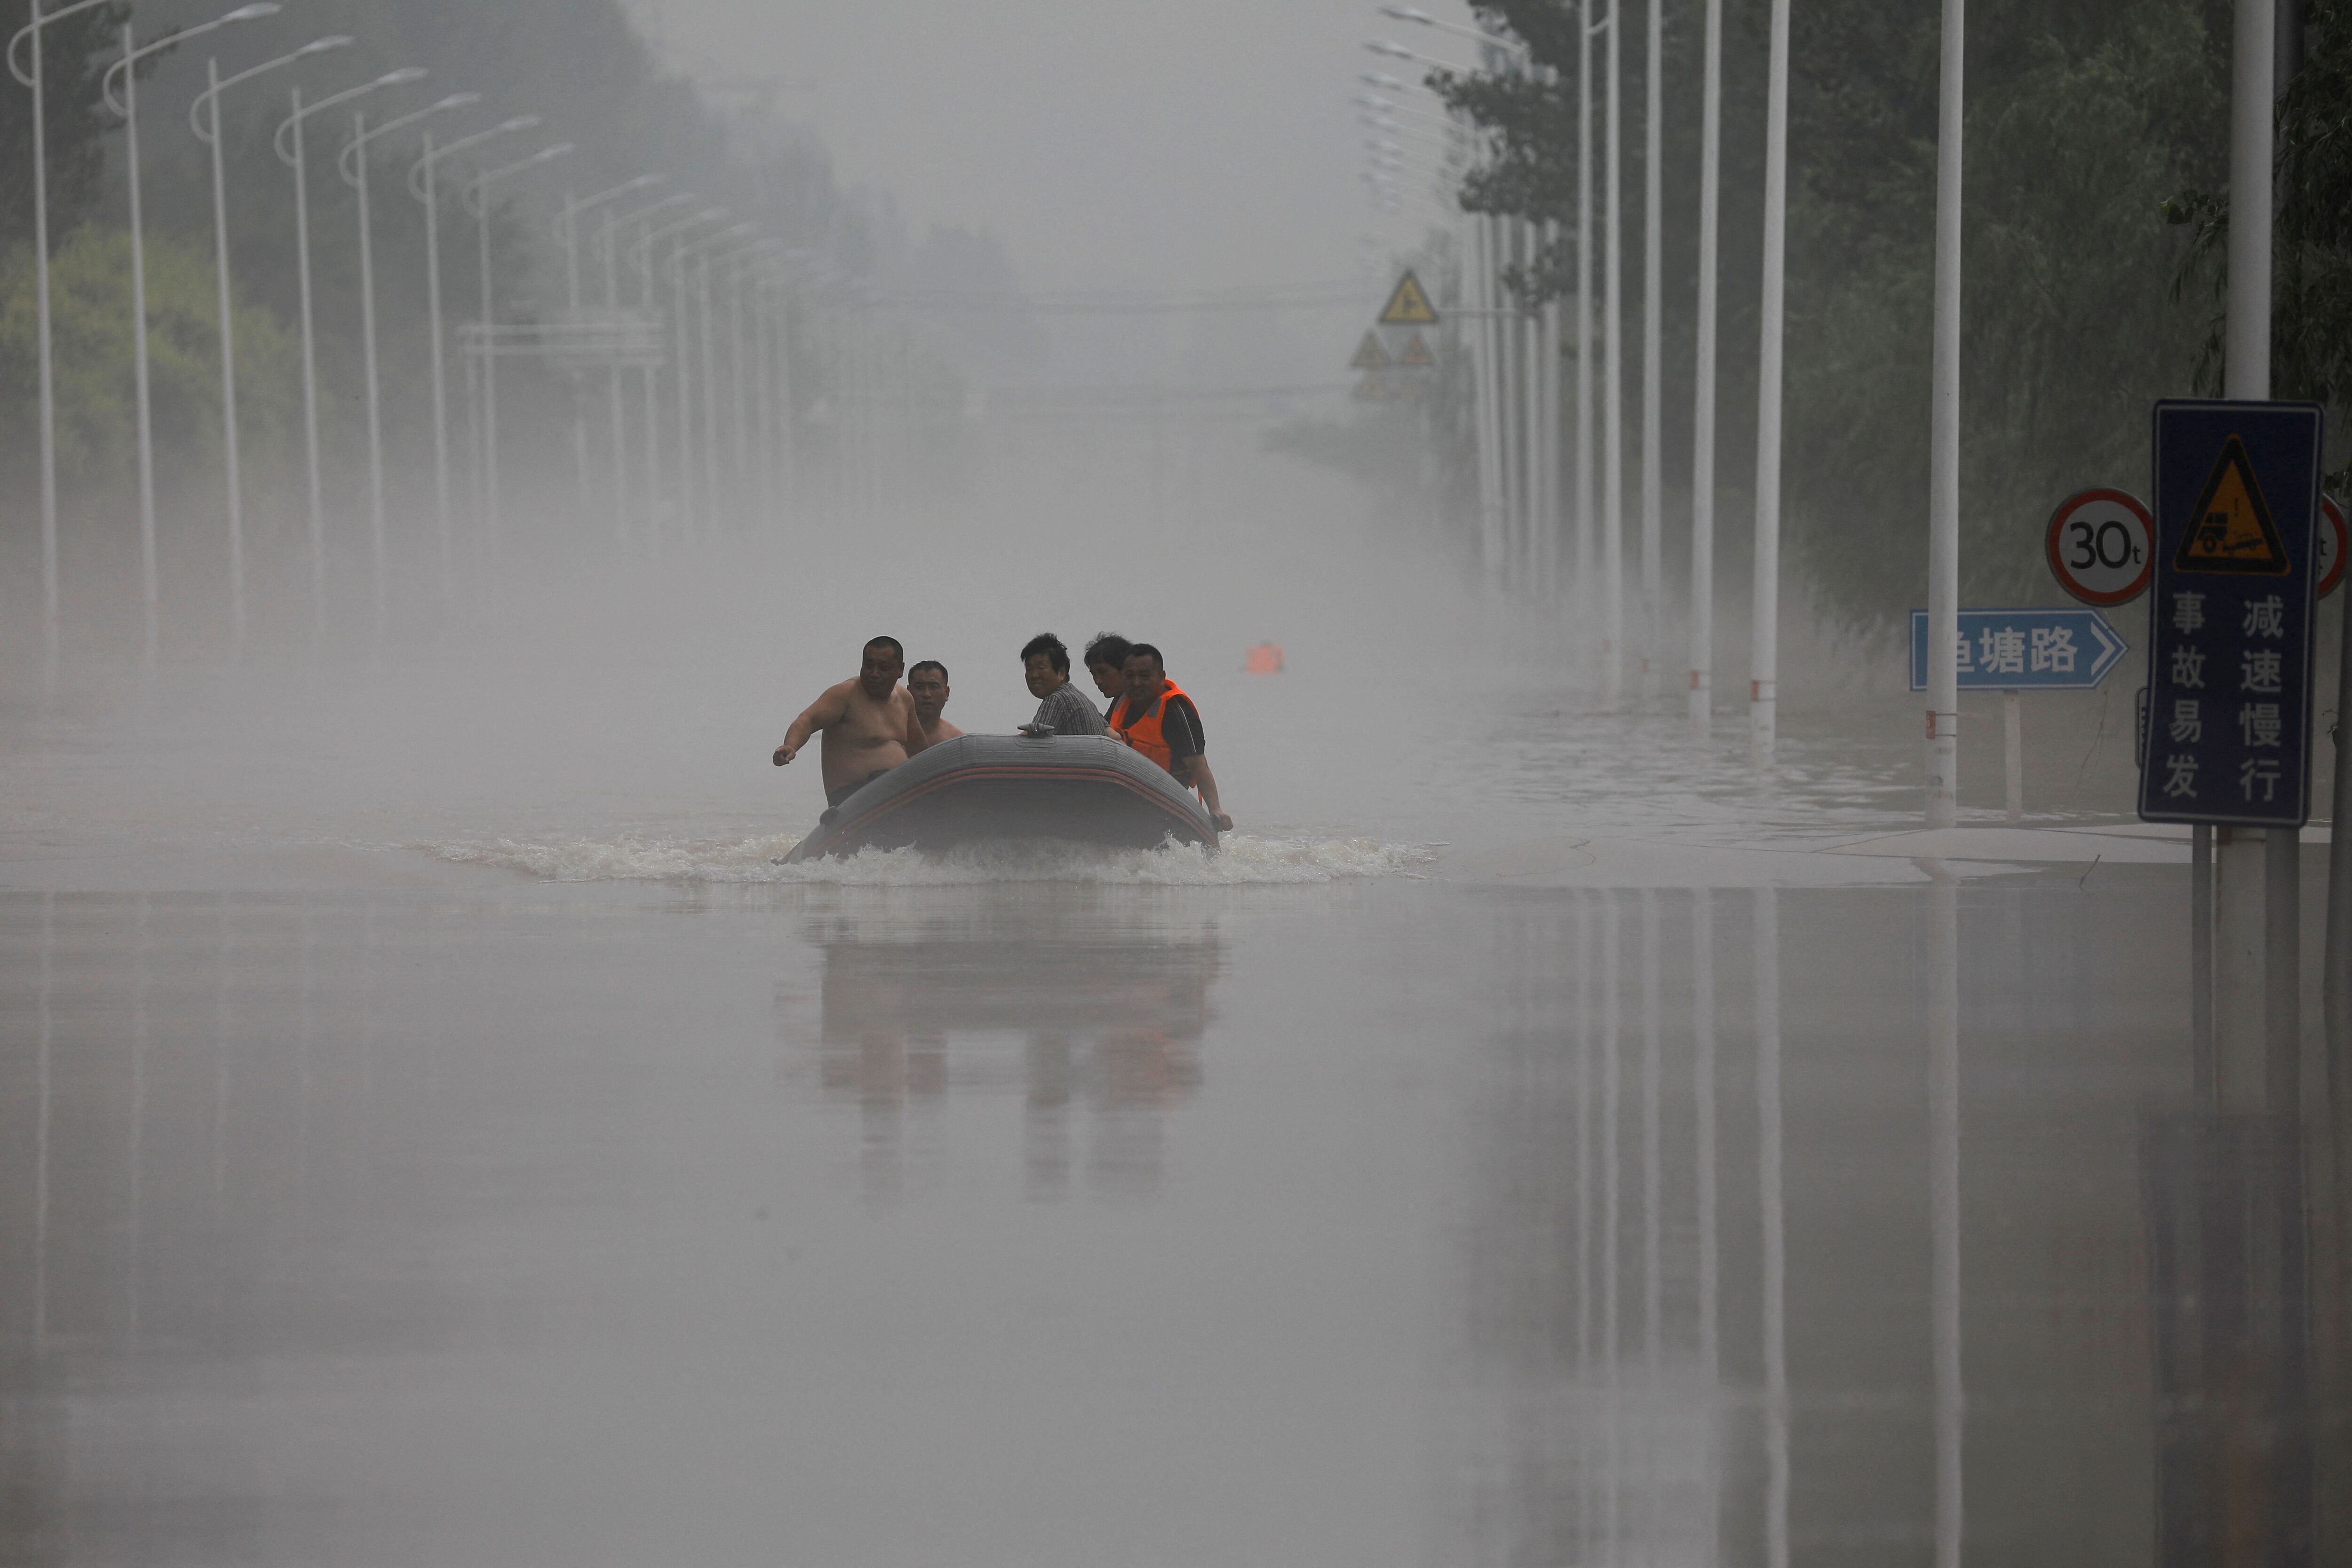 Los efectos del tifón Doksuri provocaron que Beijing y el norte del país sufrieran las lluvias más intensas en más de una década, causando también daños en infraestructuras, evacuaciones de residentes e interrupciones de los servicios públicos y el suministro de alimentos en algunas zonas. (REUTERS)